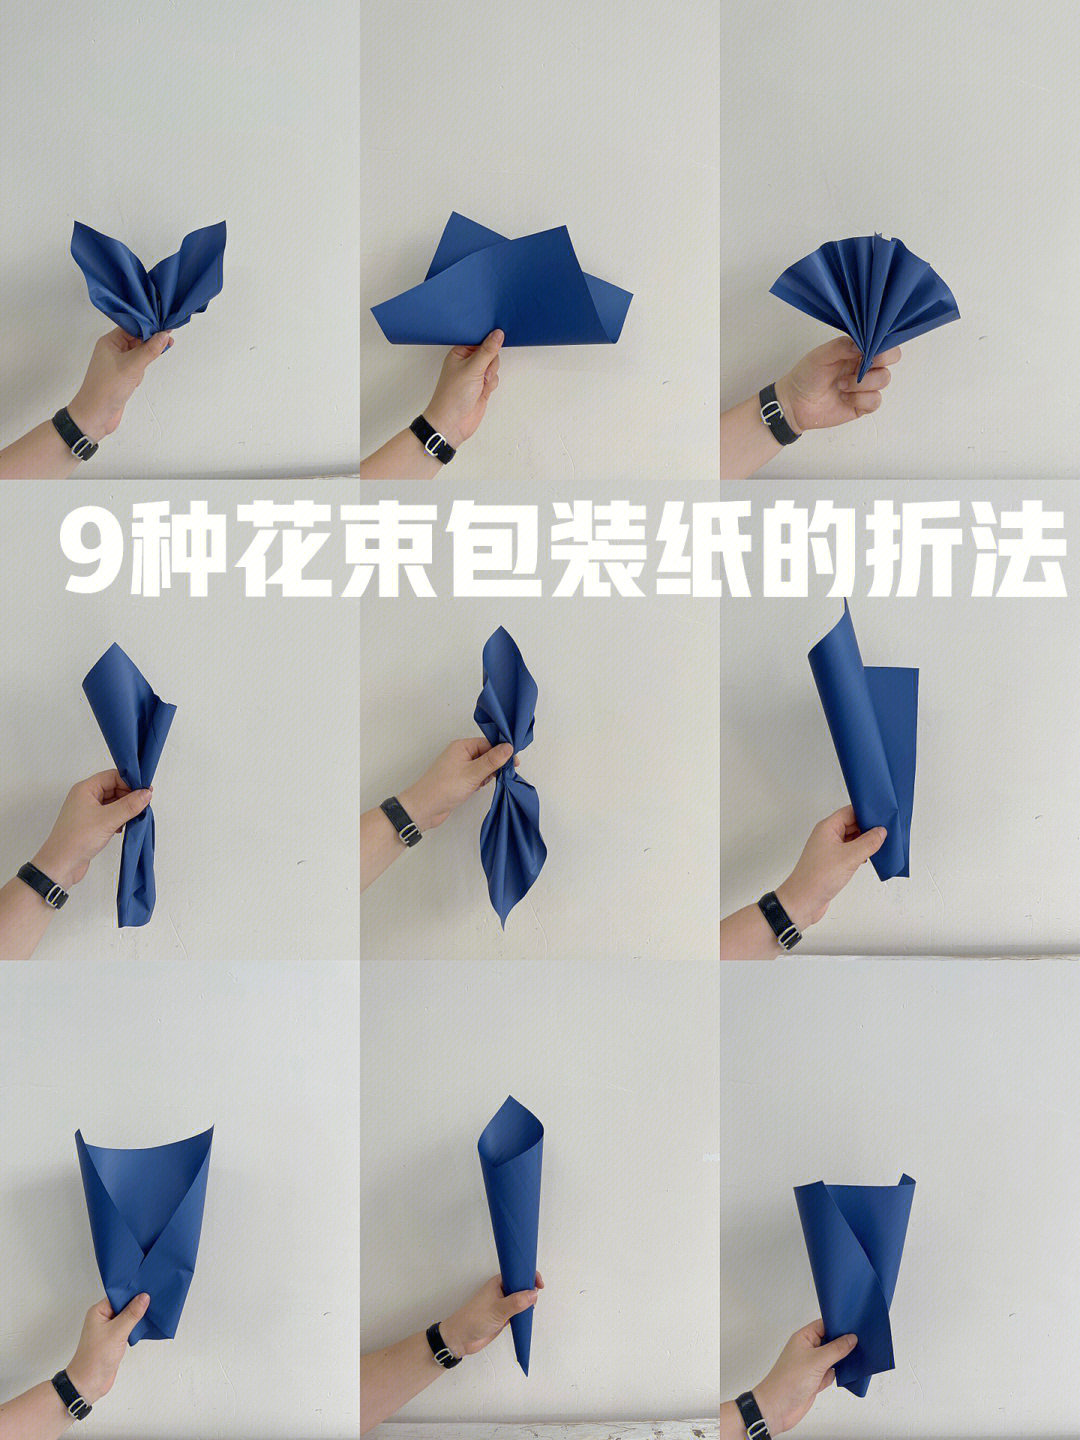 纸巾折花 步骤图片